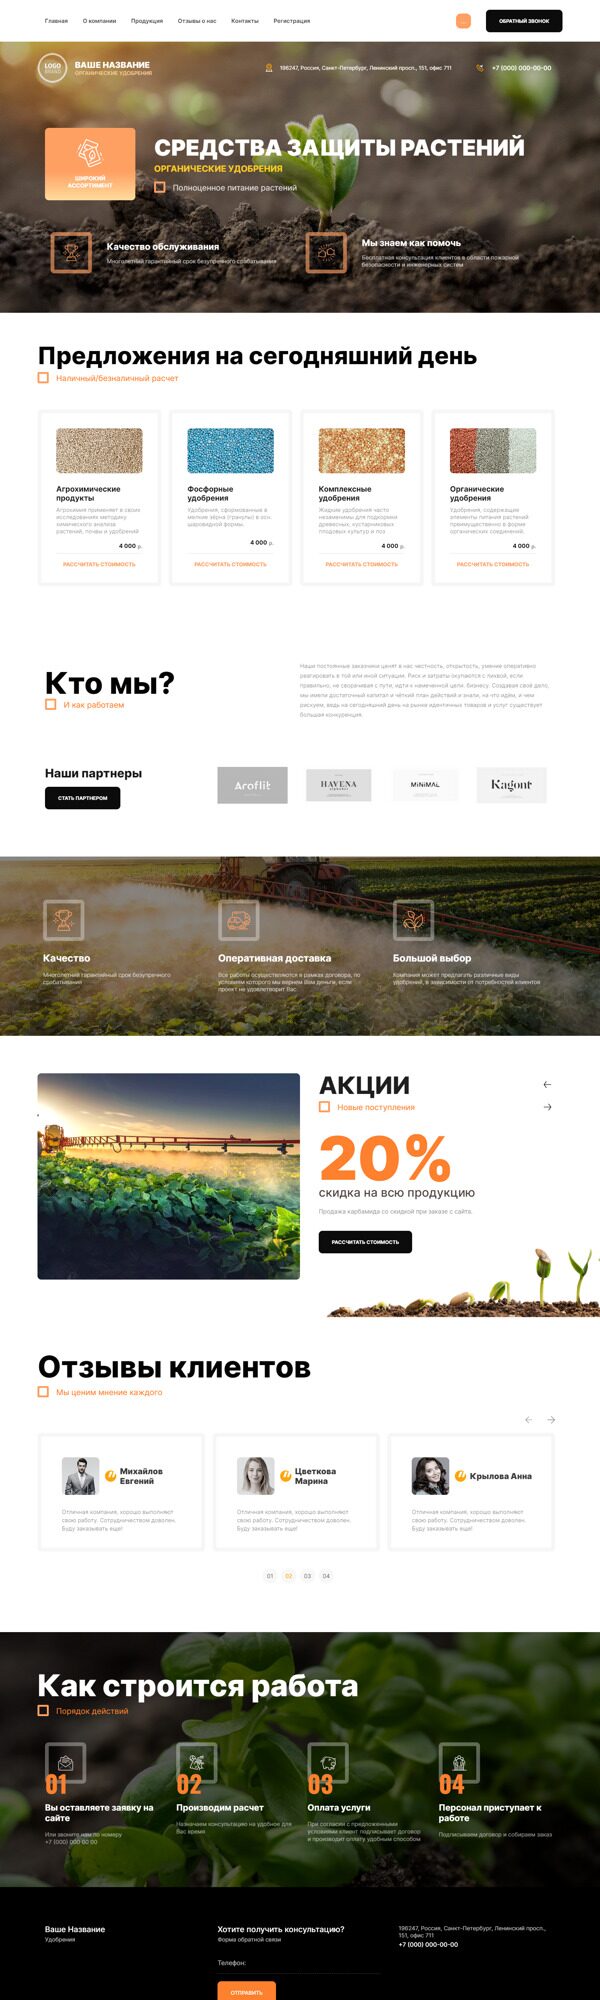 Готовый Сайт-Бизнес № 4987946 - Удобрения и агрохимические продукты (Десктопная версия)